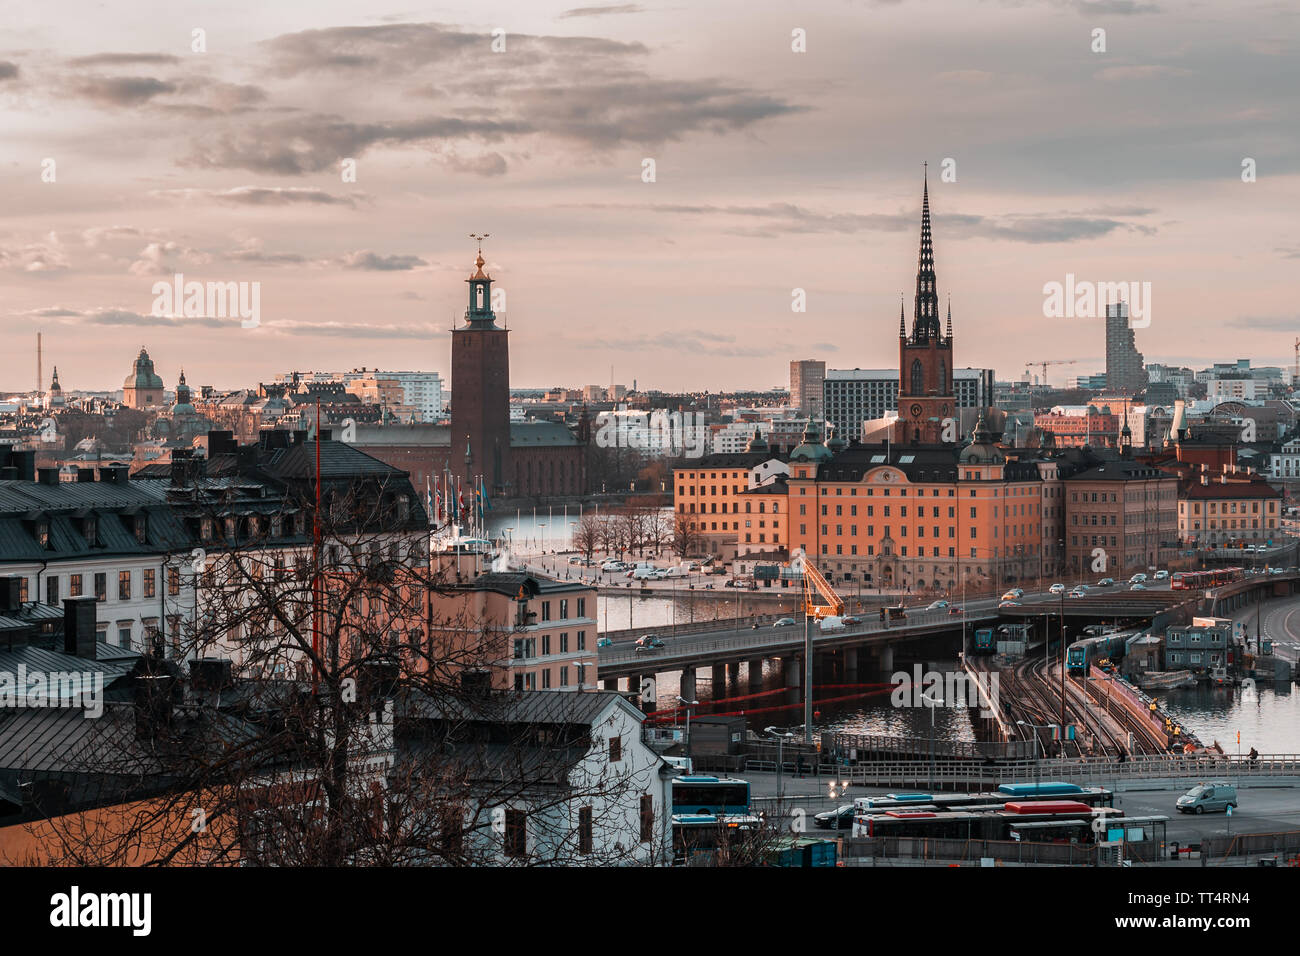 Vue depuis Slussen au coucher du soleil vers Riddarholmen et l'Hôtel de Ville ainsi que les ponts, les monuments de la ville, Stockholm Suède Banque D'Images